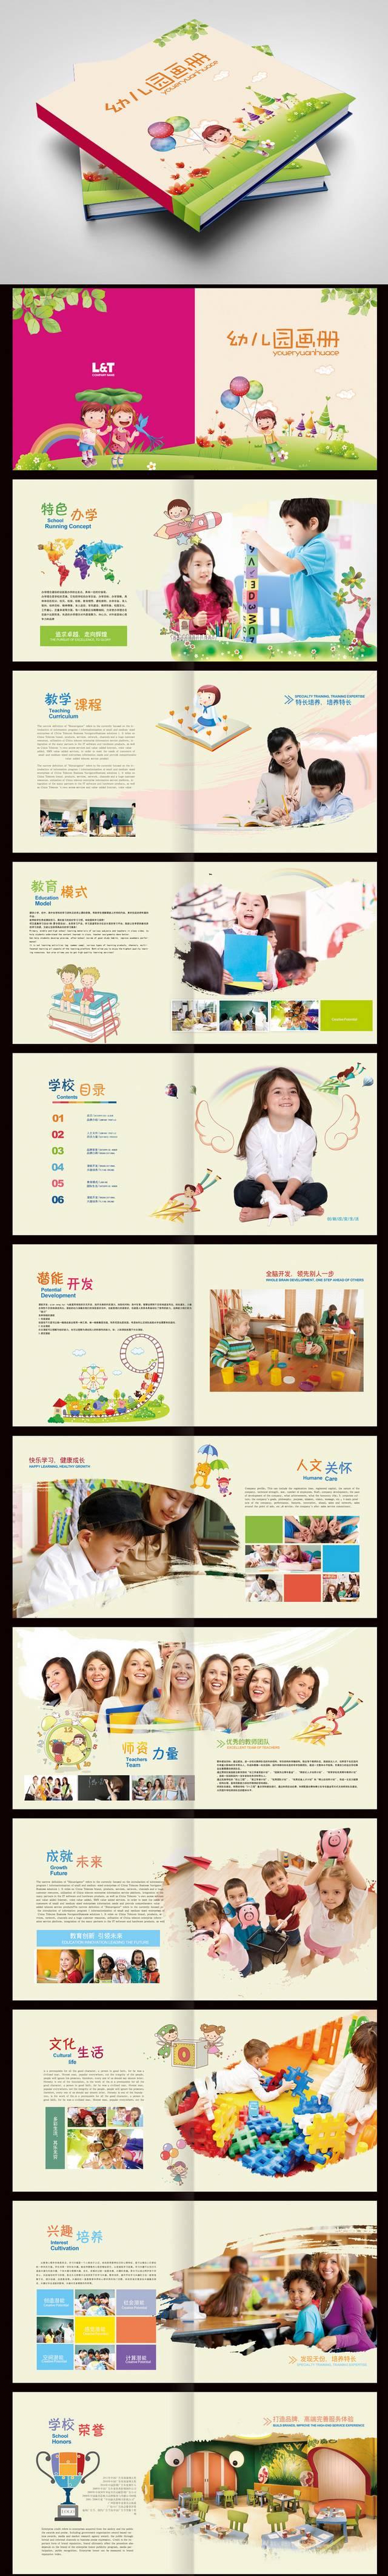 清新卡通幼儿园画册宣传设计